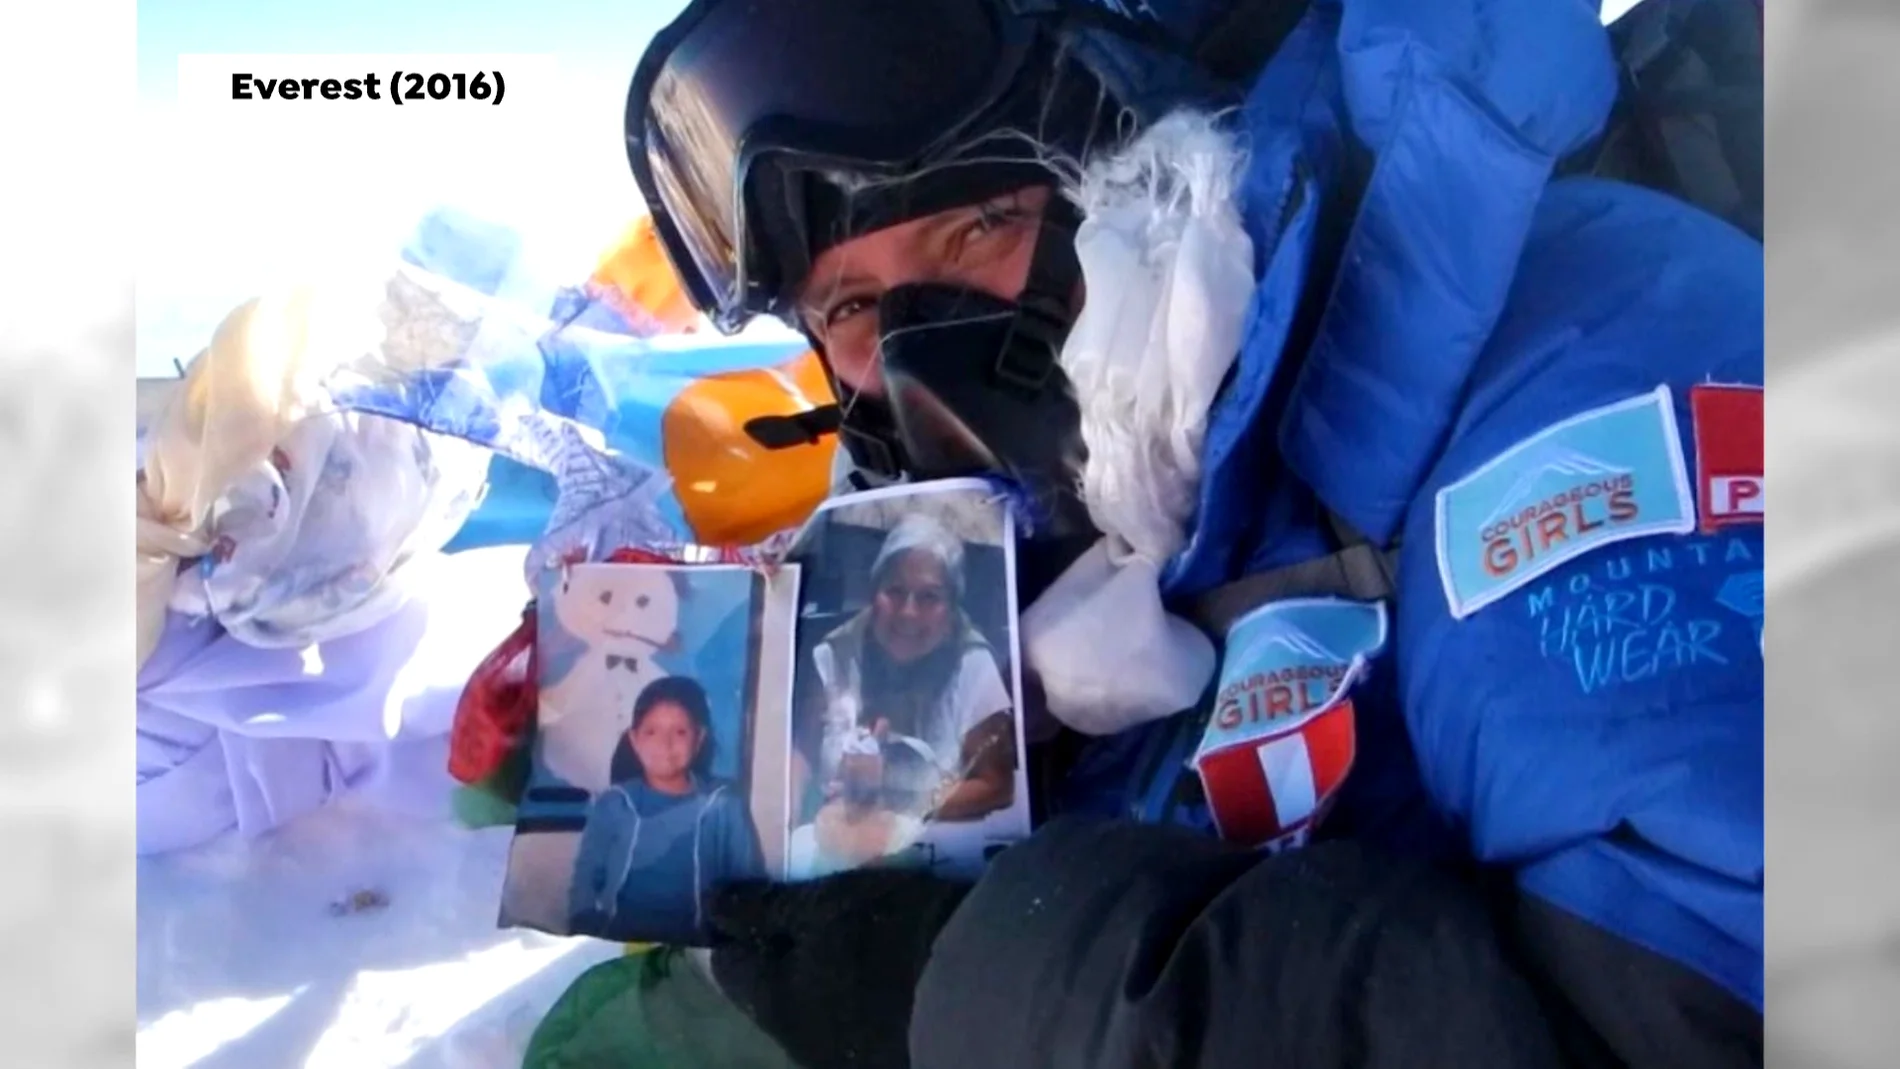 Silvia Vásquez-Lavado, de sufrir abusos y alcoholismo a la cima del Everest